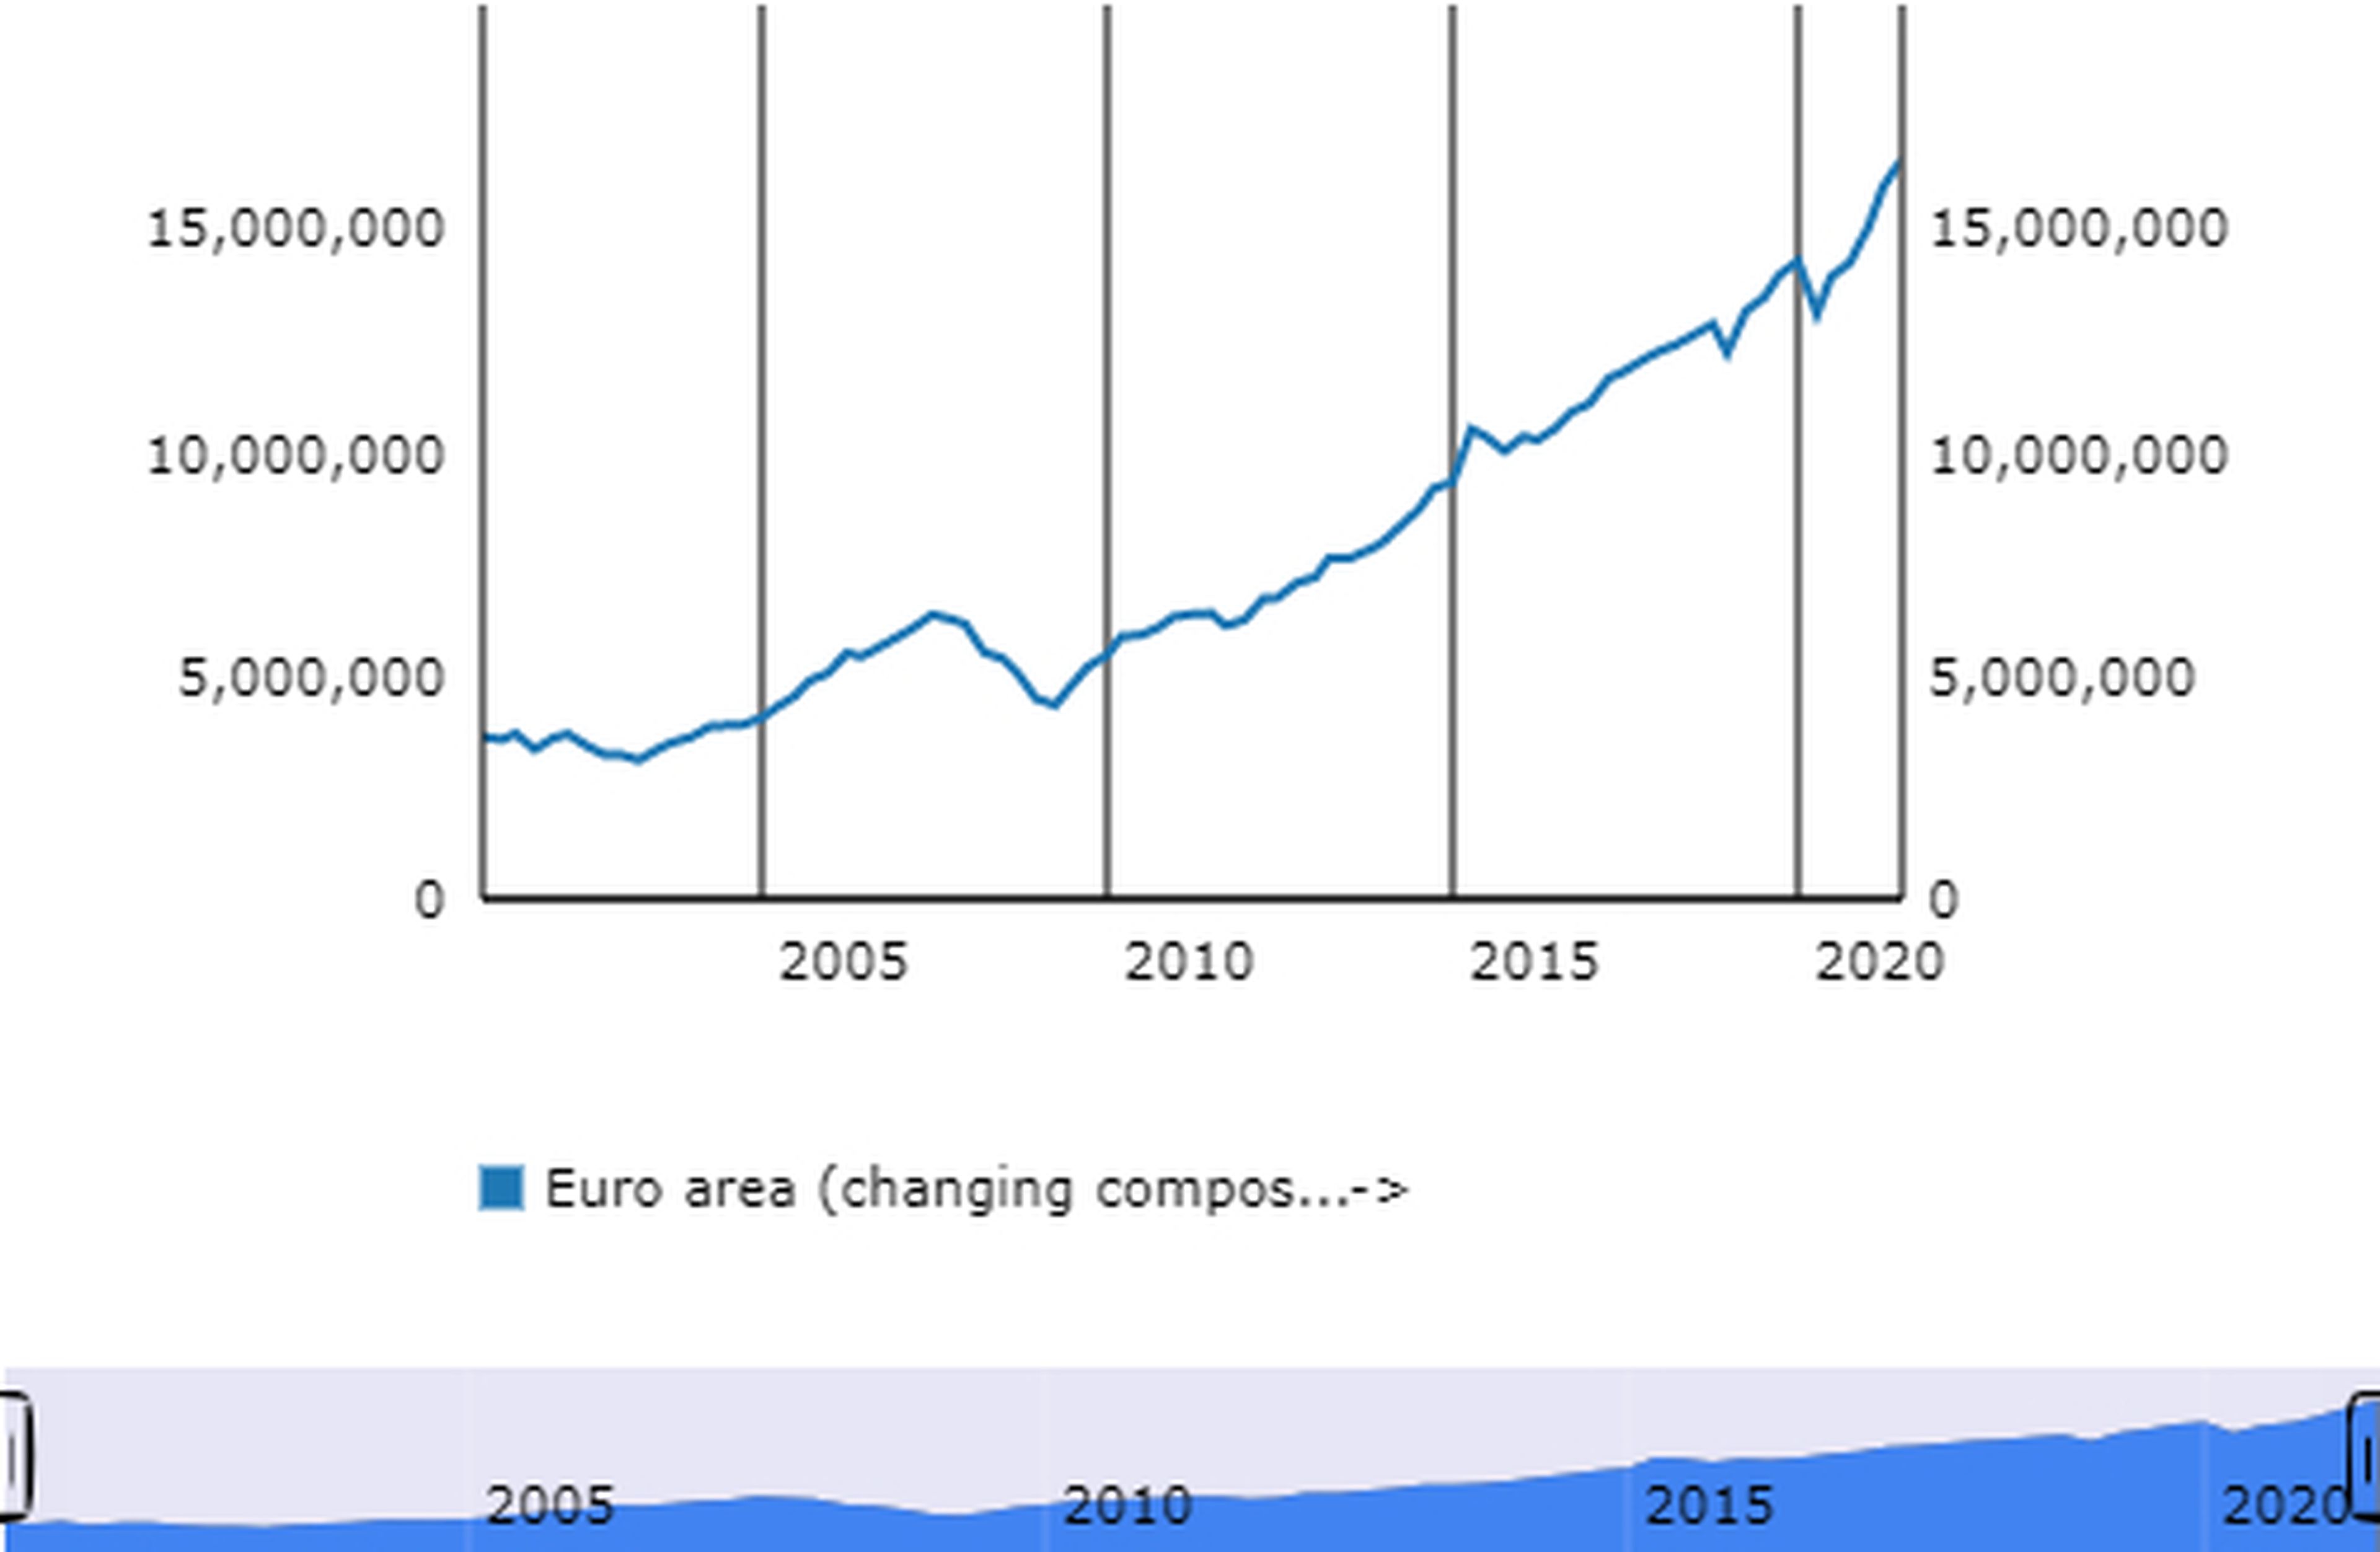 Evolución de los activos en fondos de inversión en los países de la zona euro entre el año 2000 y 2021. Datos en millones de euros.